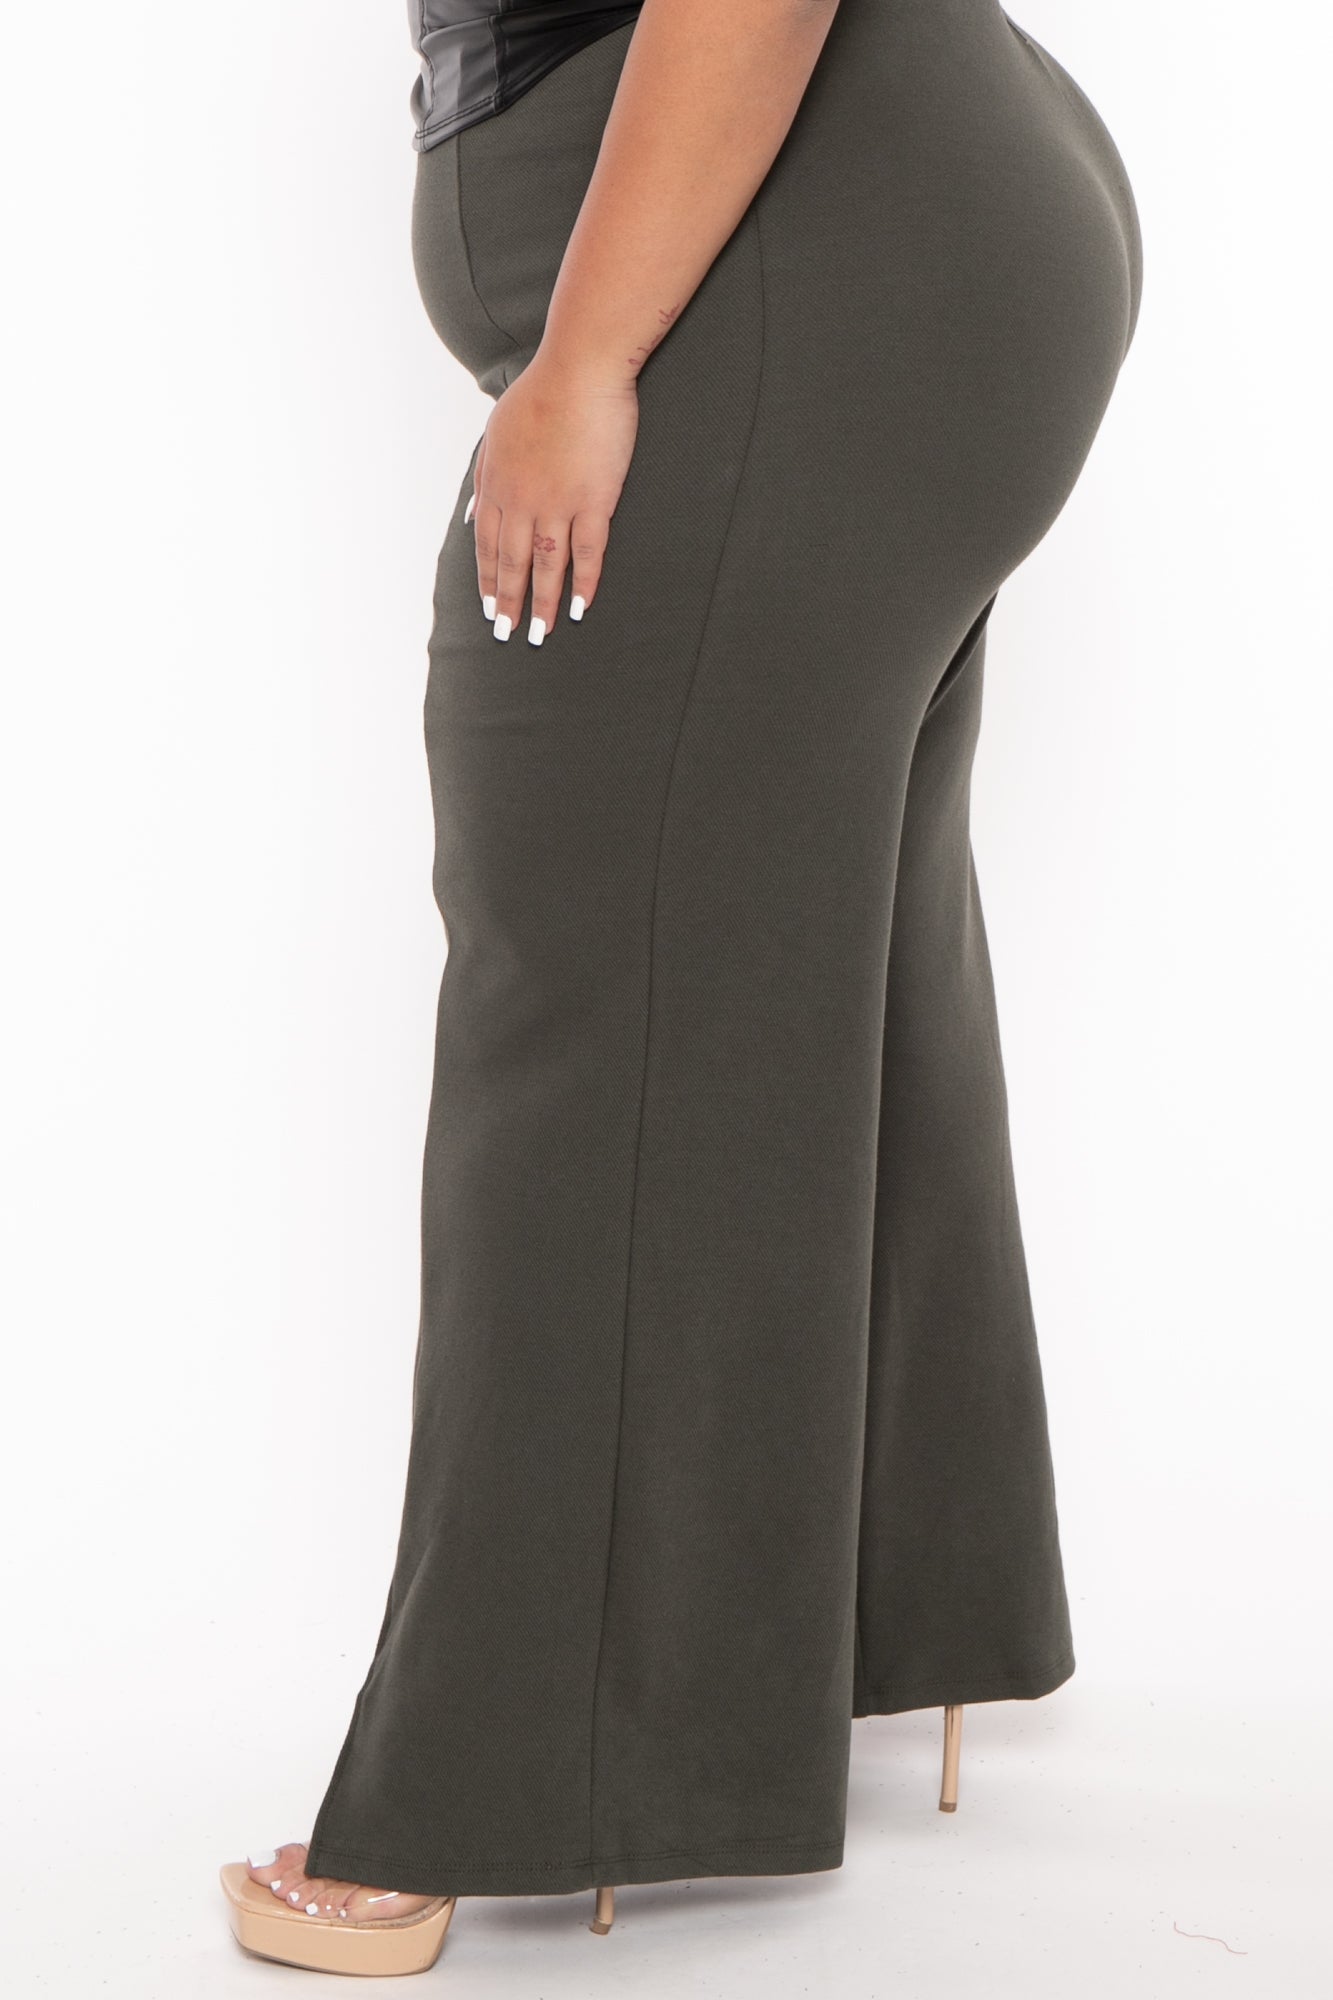 Women's Plus Size High Waist Front Slit Pants - Olive - Curvy Sense